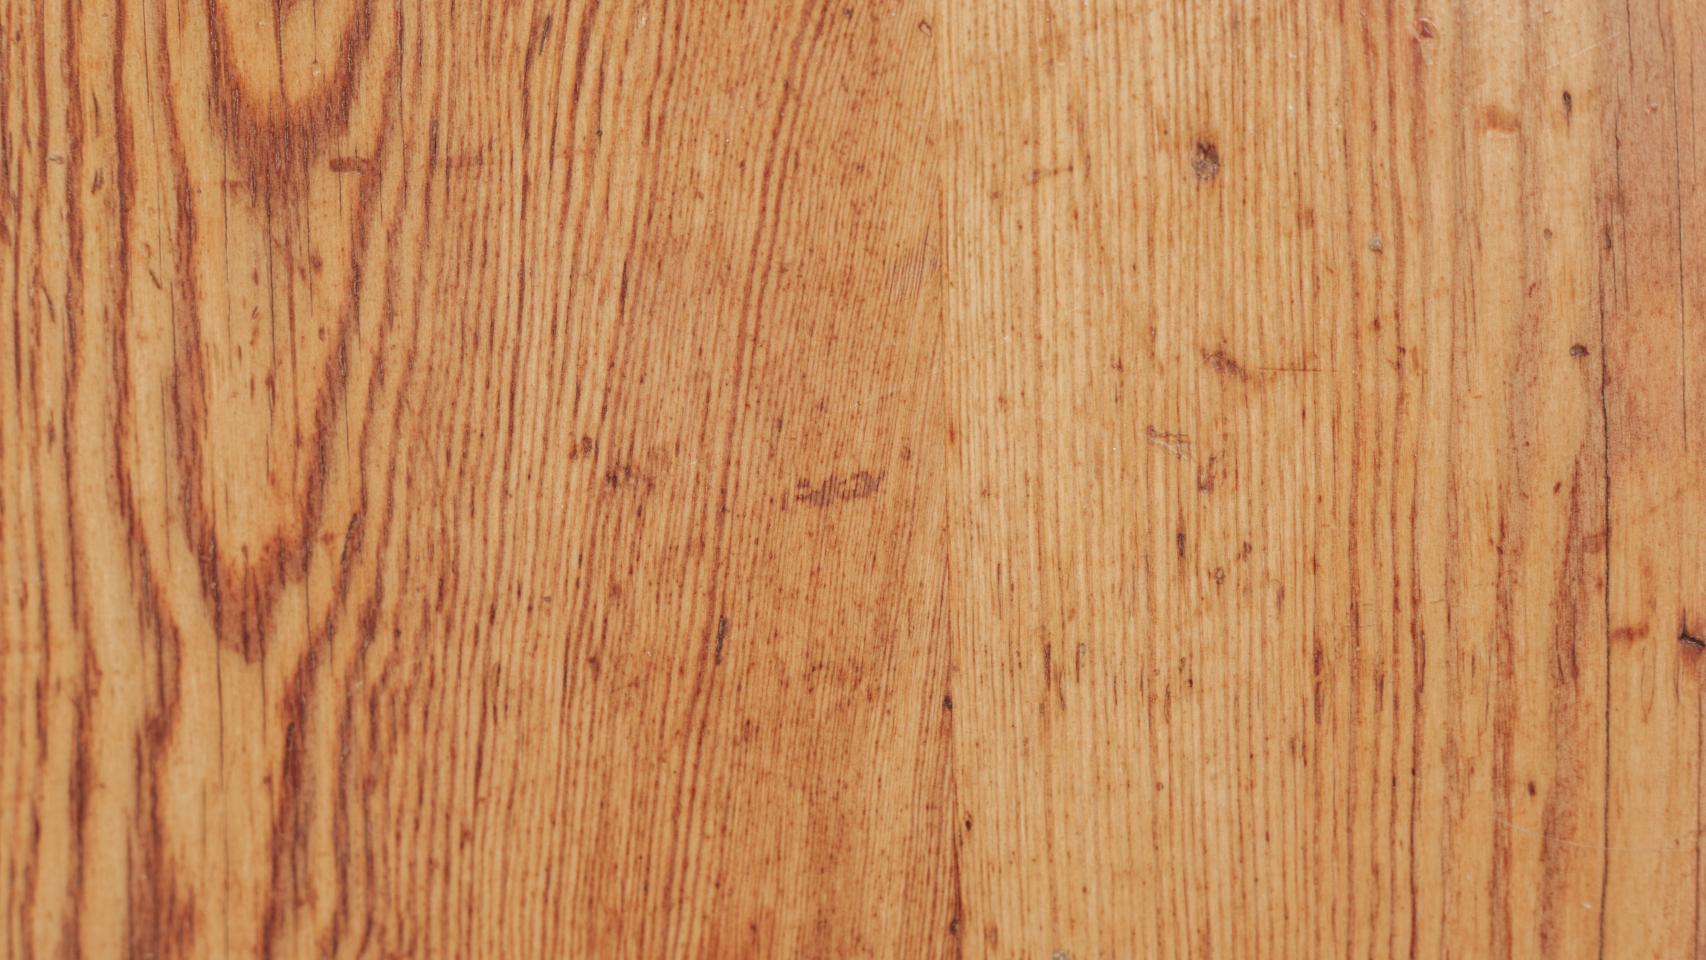 Cómo quitar arañazos en suelos y muebles de madera: trucos caseros